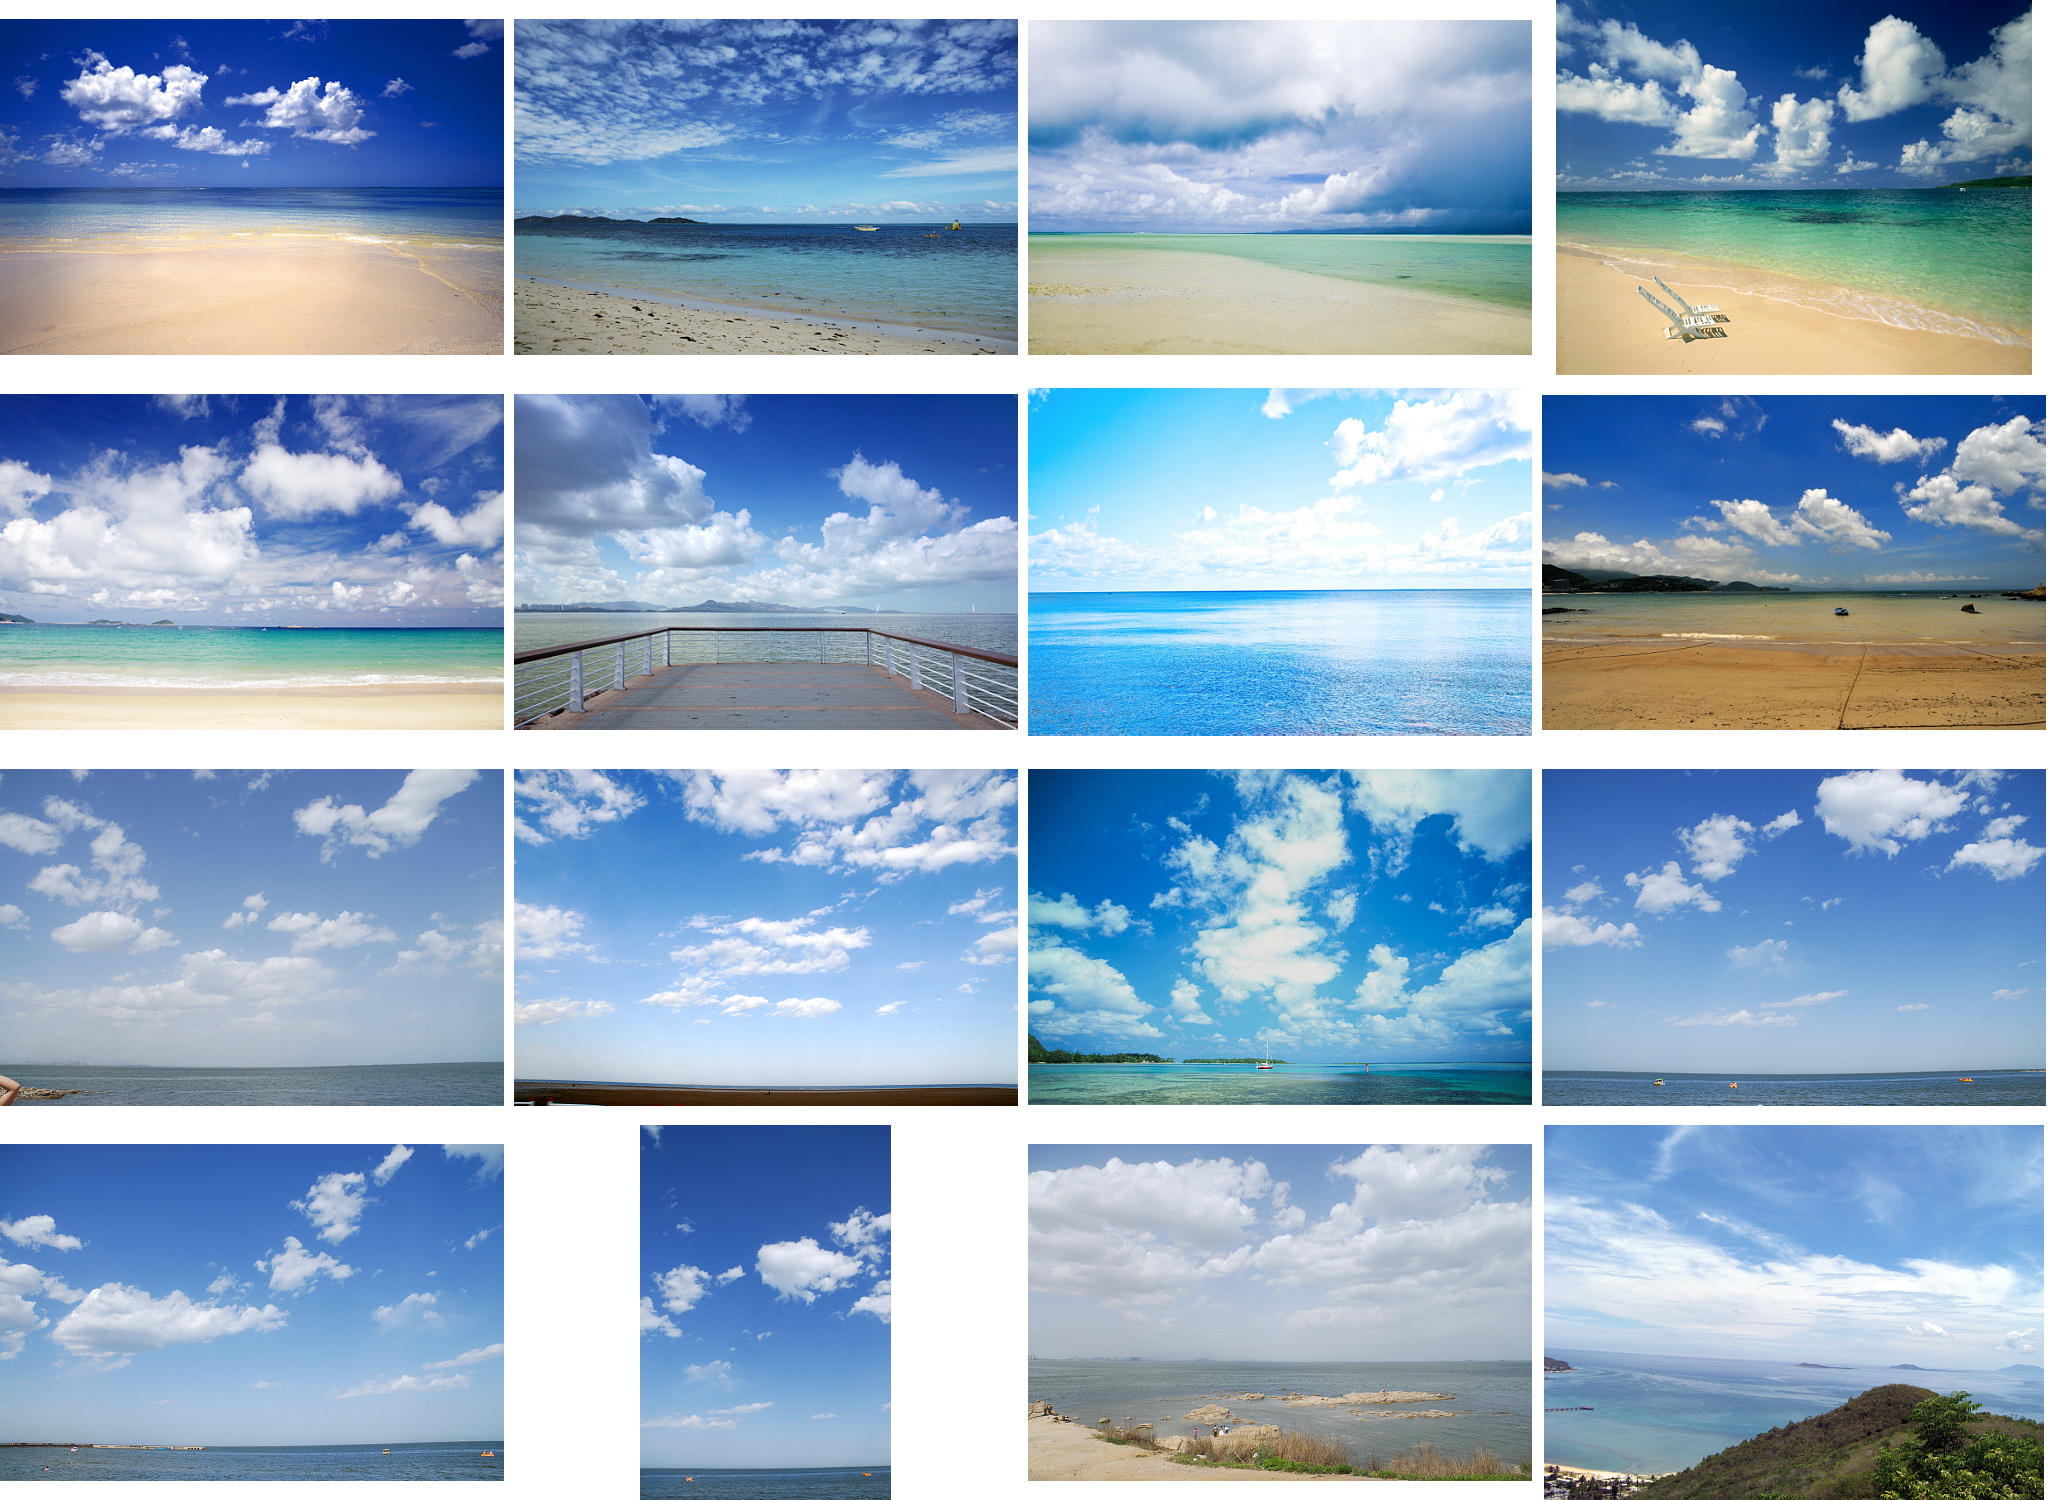 Stock mây là một kho tài nguyên đáng để khám phá. Bạn sẽ bất ngờ với những bức ảnh mây đẹp tuyệt vời trong kho ảnh này. Dẫn nhau vào thế giới tuyệt đẹp của những dãy mây đầy sắc màu và hình dáng khác nhau. Hãy cùng khám phá và tìm kiếm những bức ảnh mây đẹp nhất để sử dụng cho các dự án của bạn.